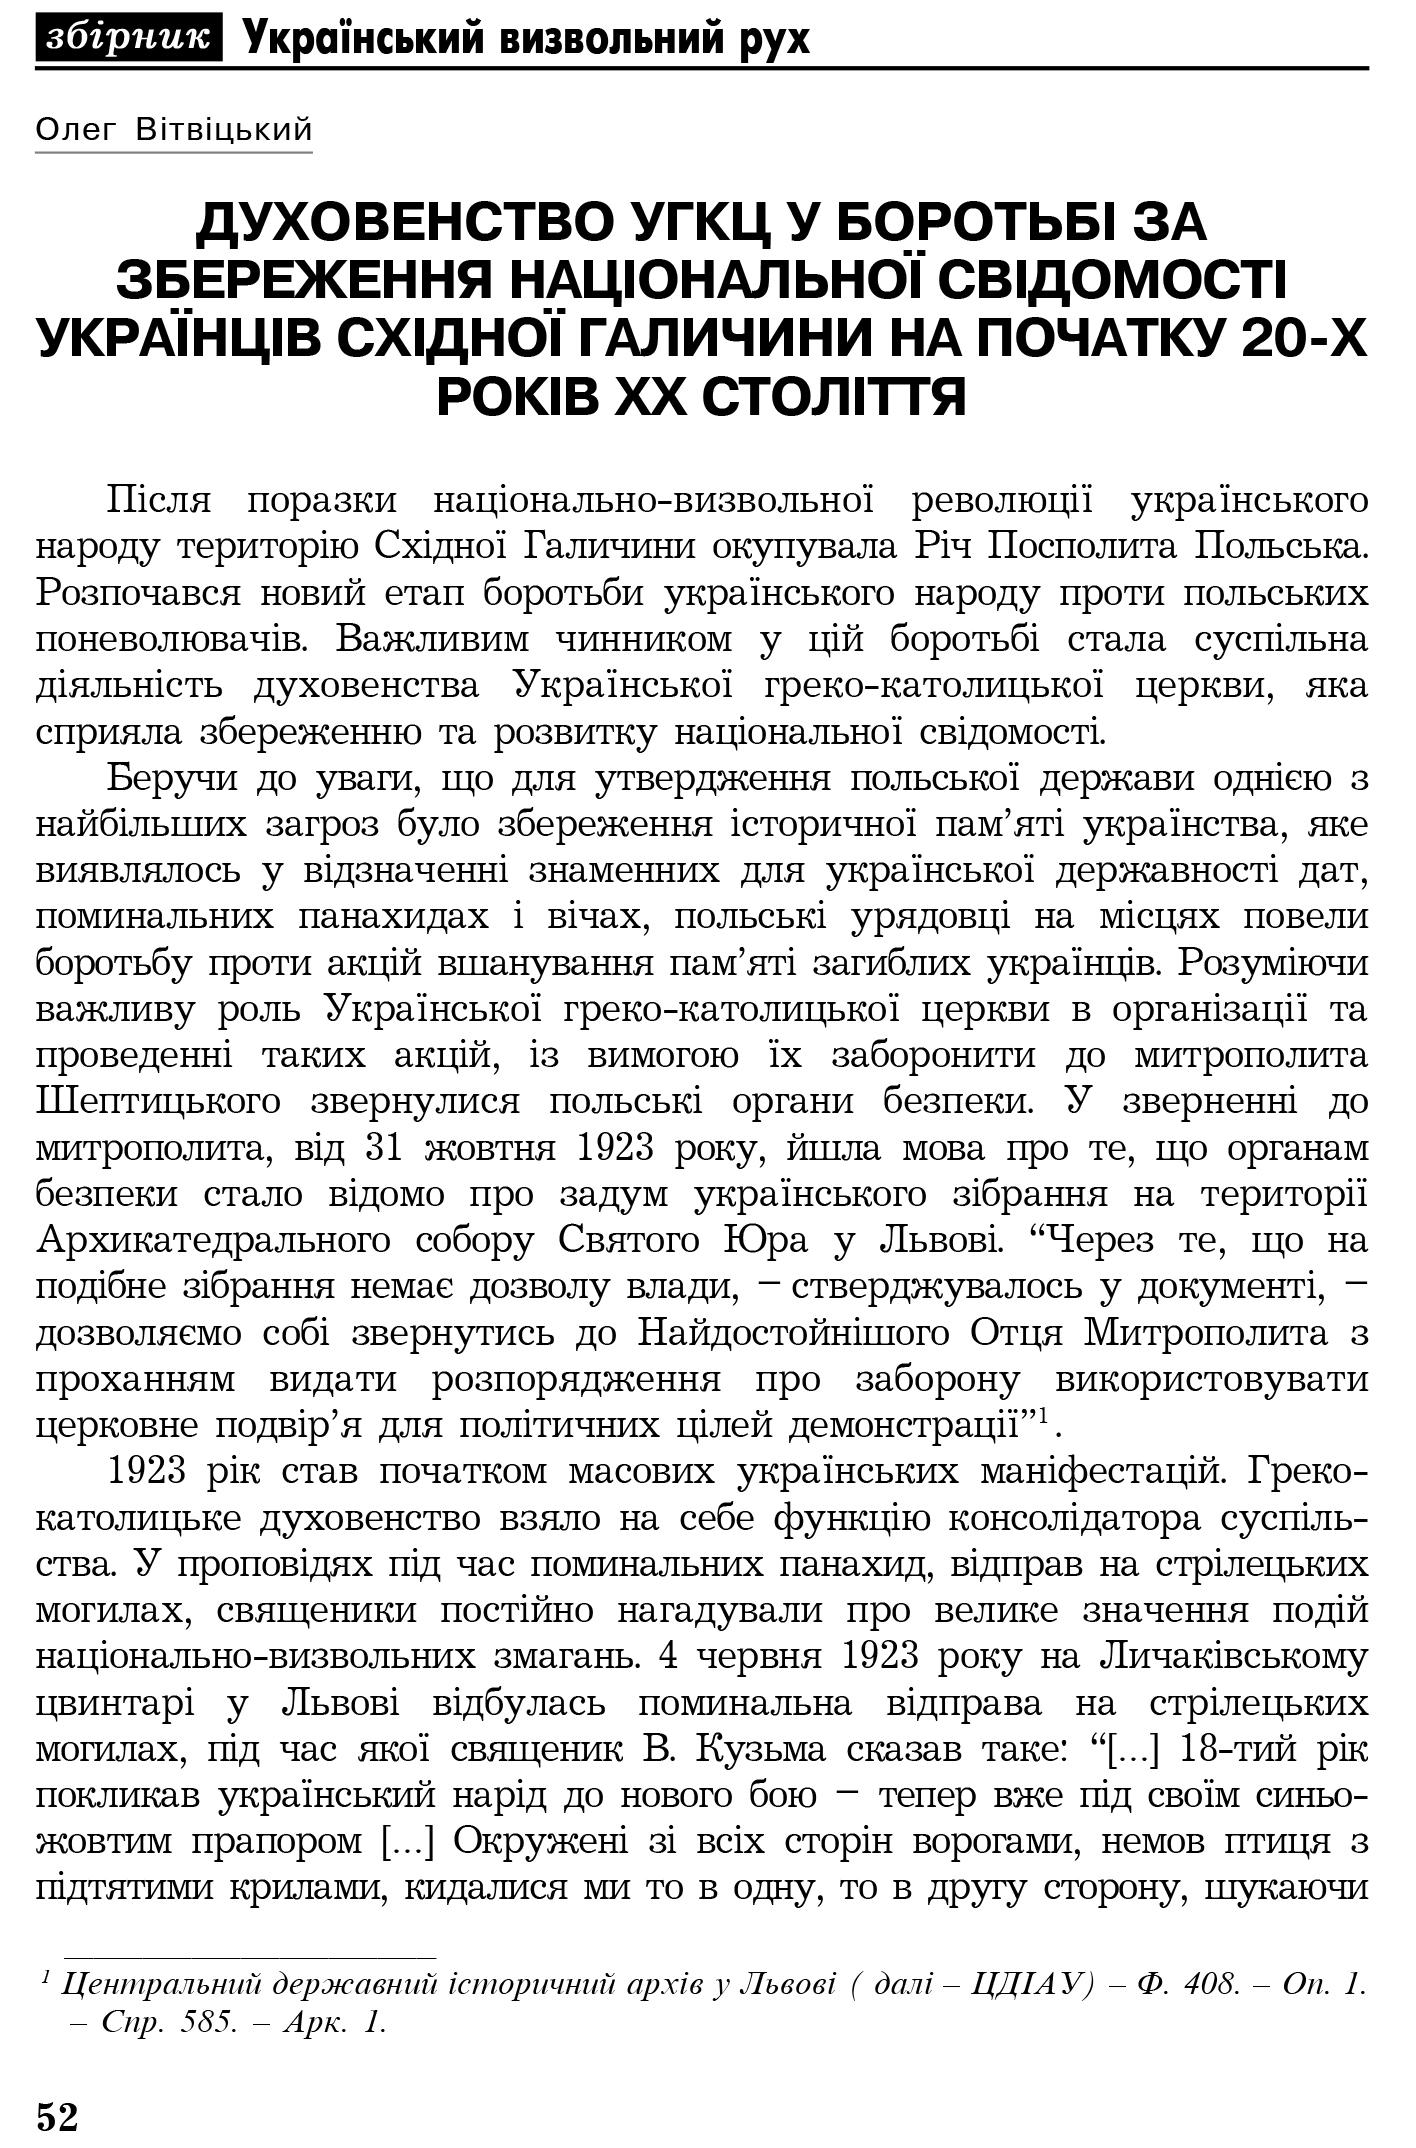 Український визвольний рух №4, ст. 52 - 60